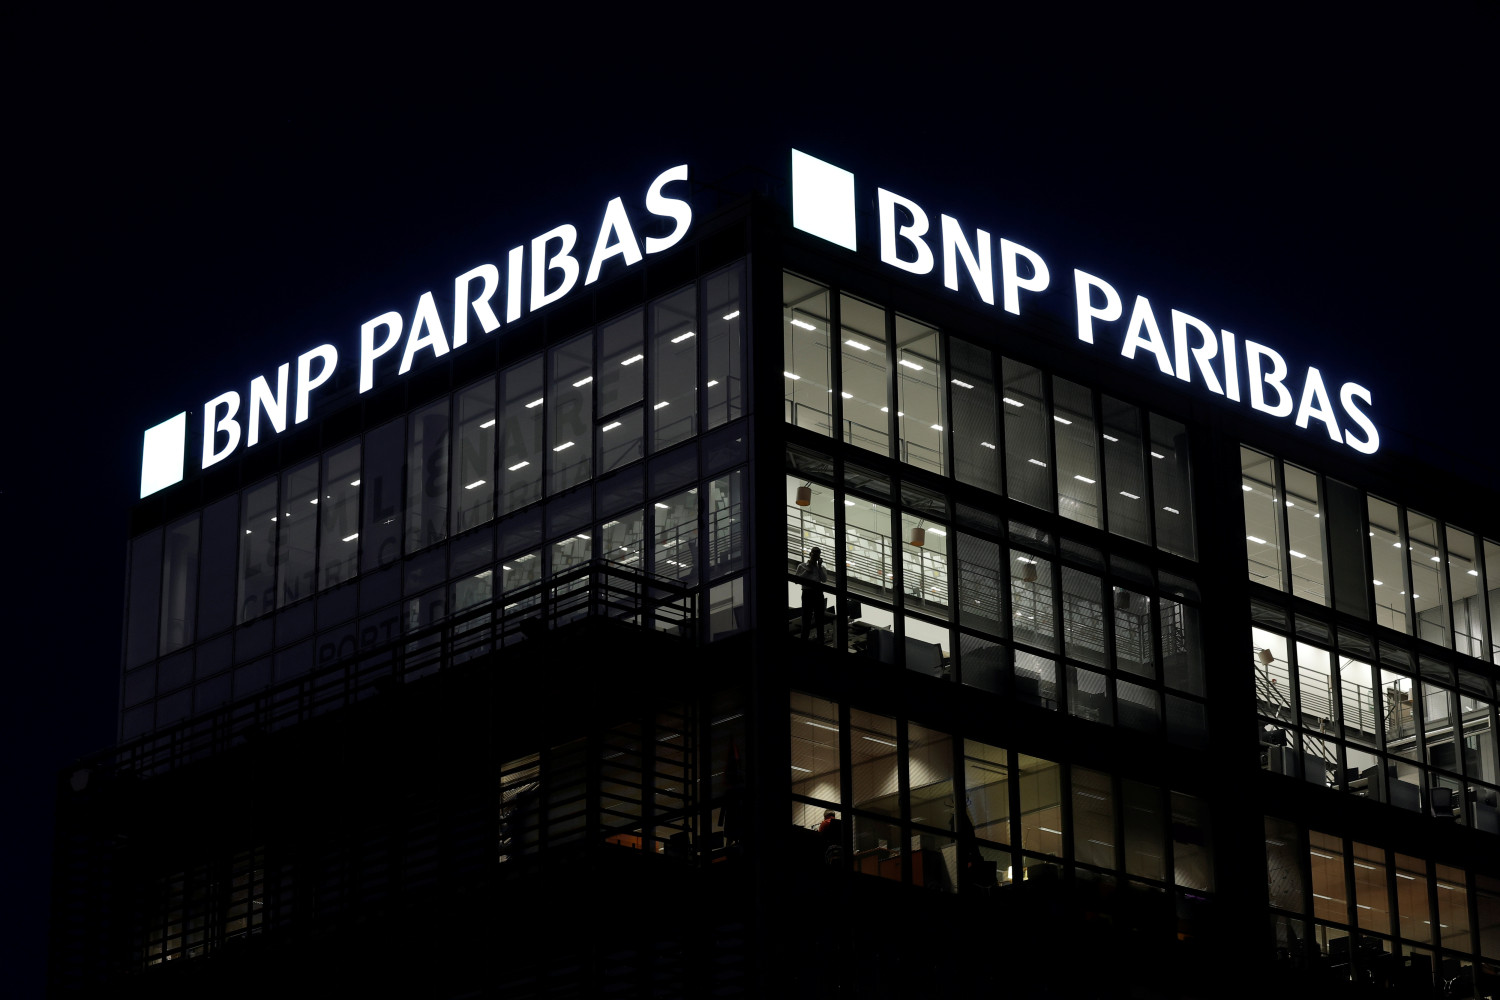 photo d archives d un logo sur une agence bancaire bnp paribas a paris 20230107123817 